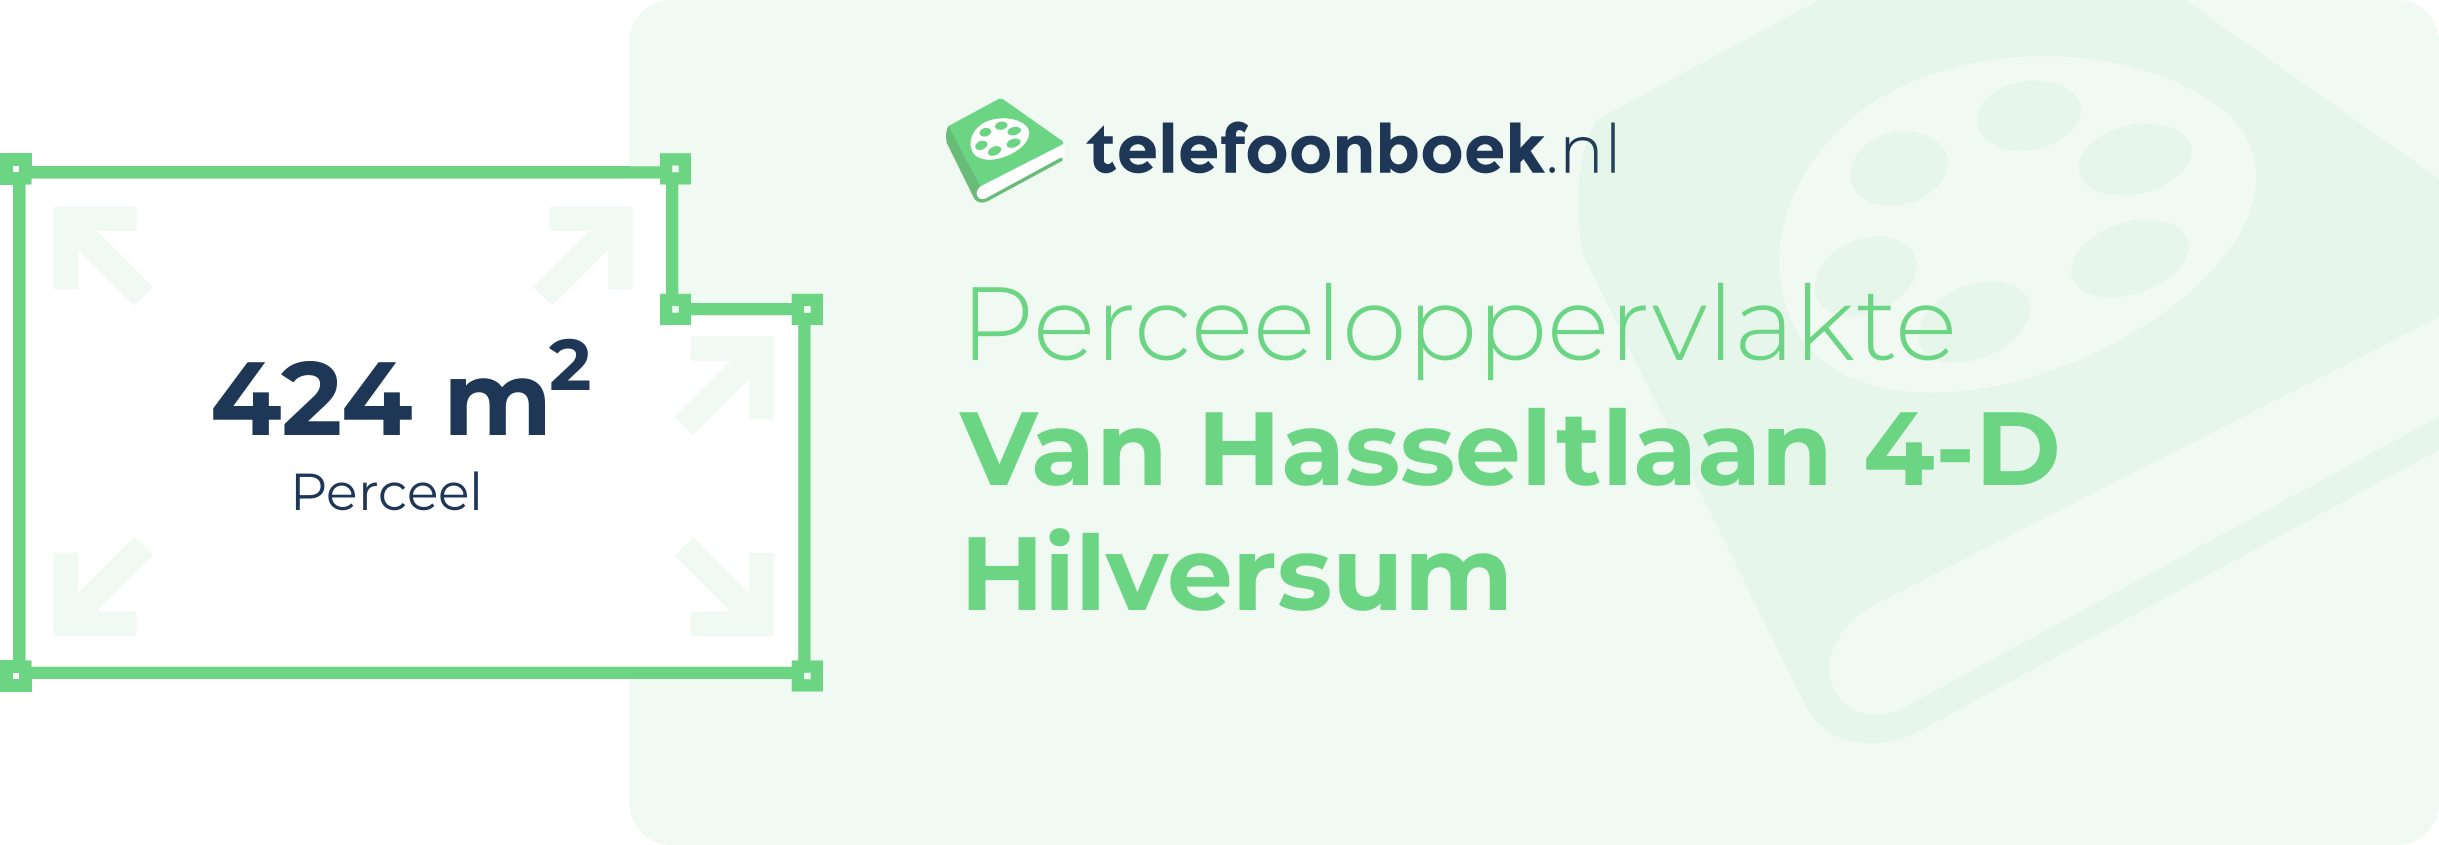 Perceeloppervlakte Van Hasseltlaan 4-D Hilversum